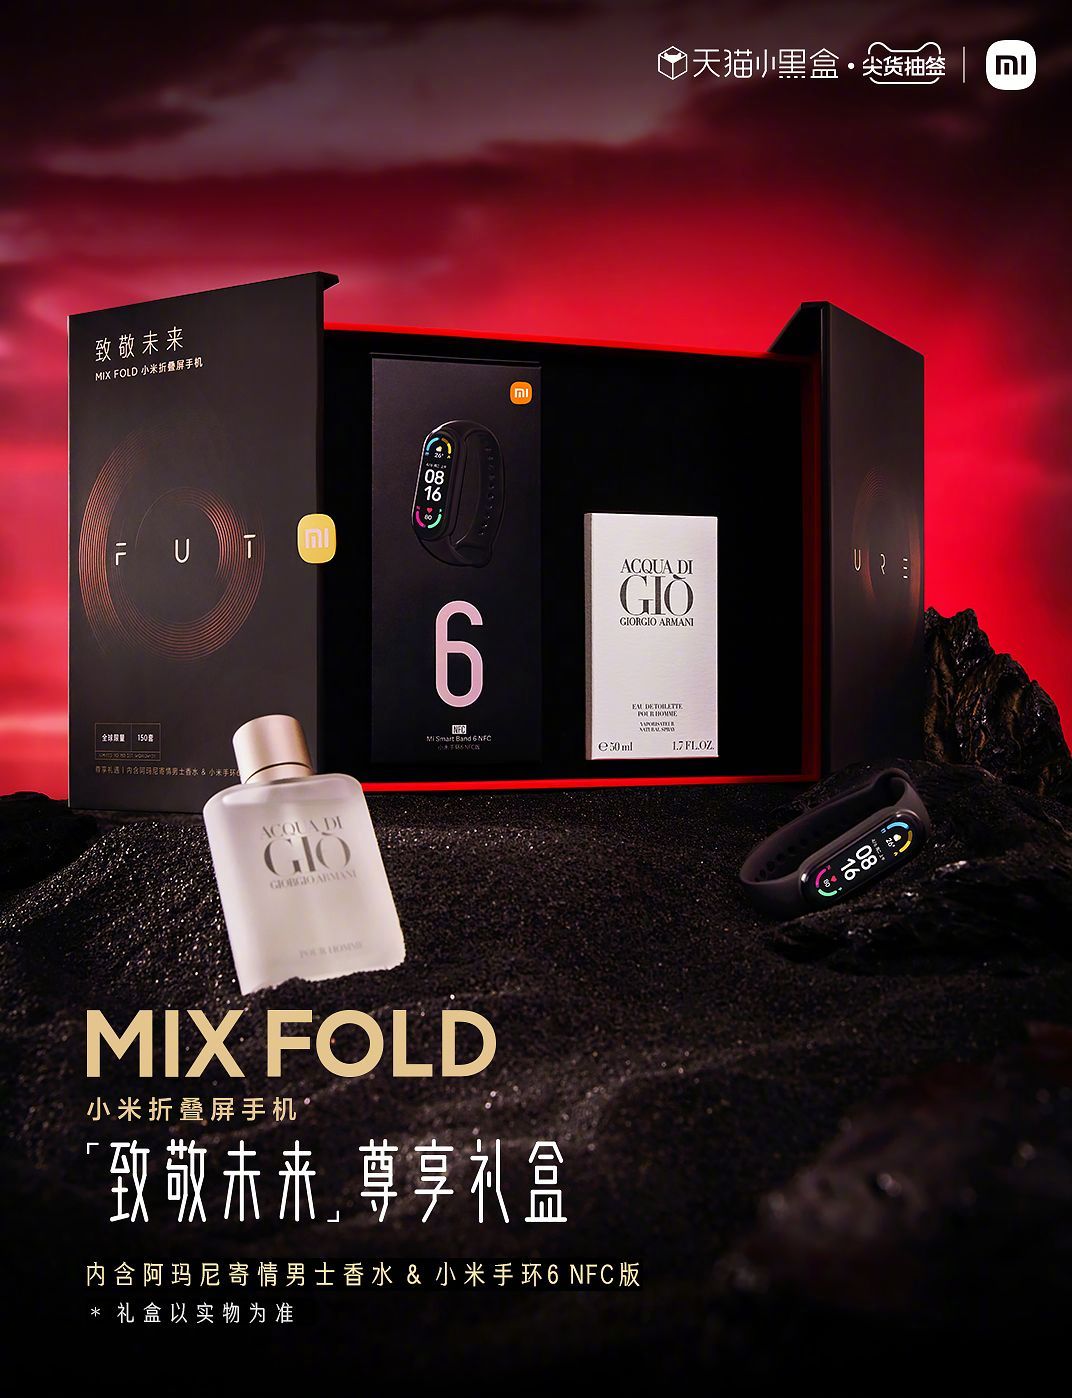  Xiaomi Mi Mix Fold в подарочном издании Xiaomi  - pahnet_innovaciami_xiaomi_predlozhila_podarochnoe_izdanie_mi_mix_fold_4